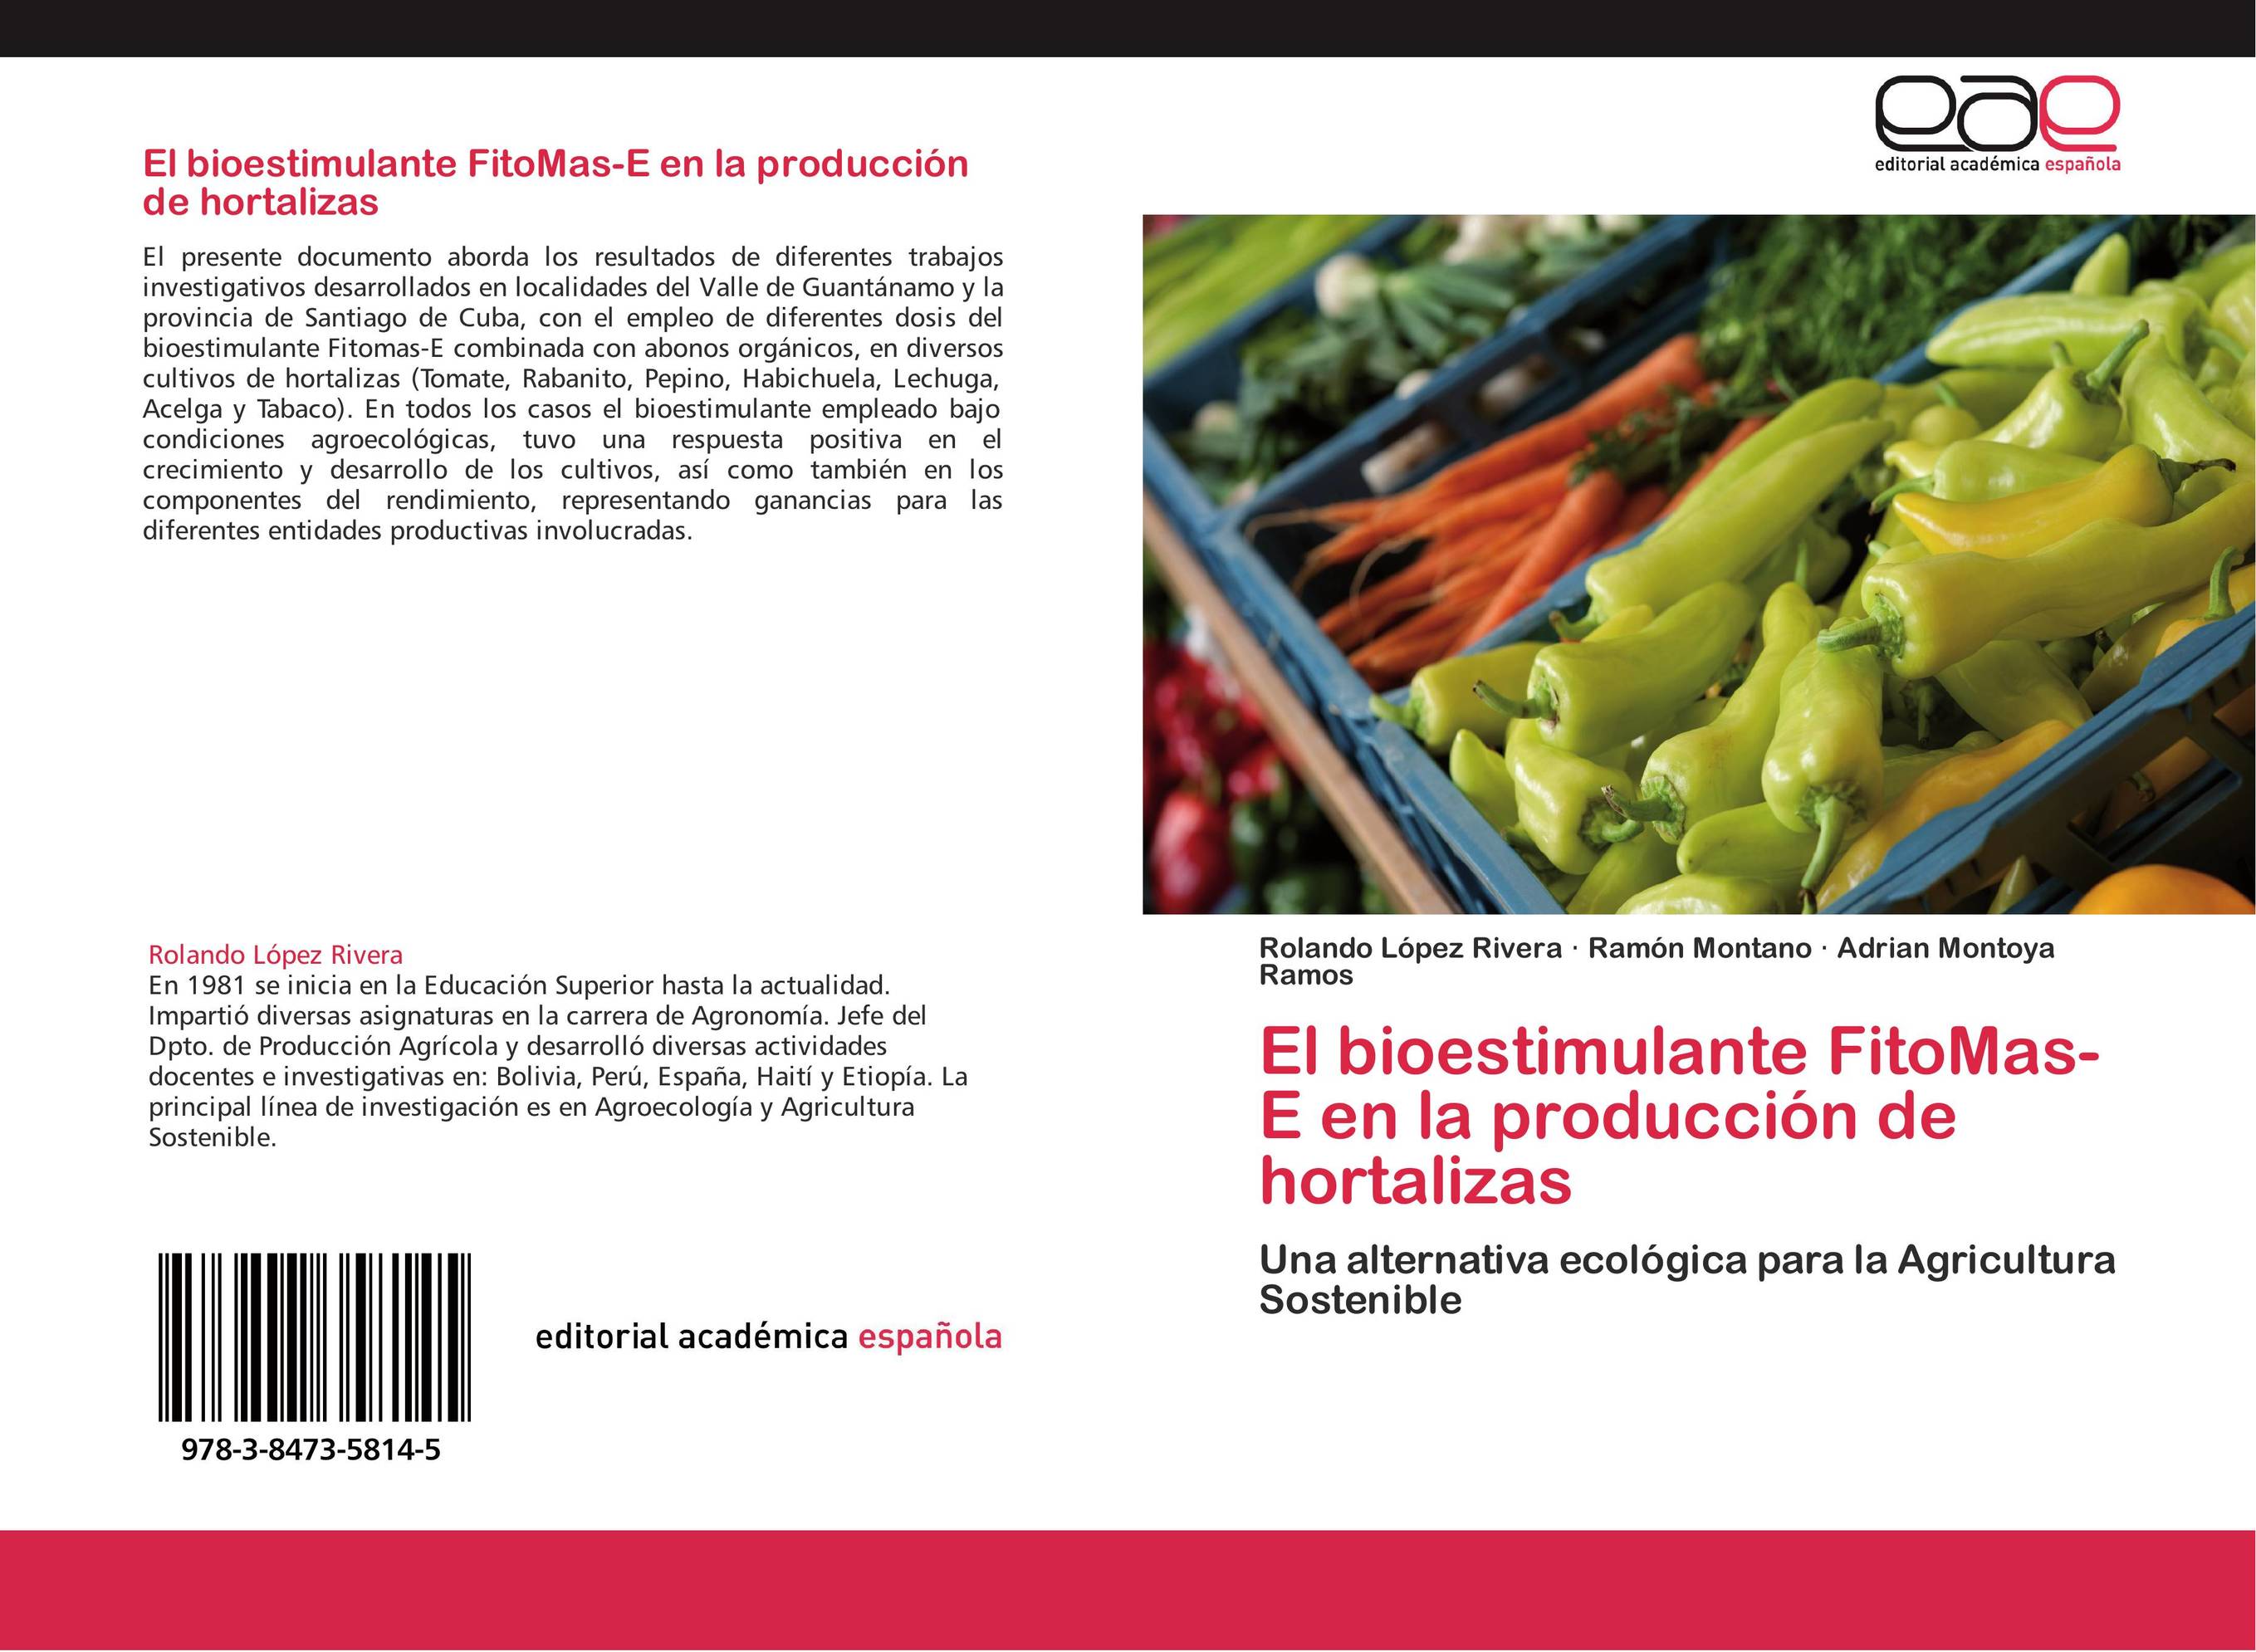 El bioestimulante FitoMas-E en la producción de hortalizas